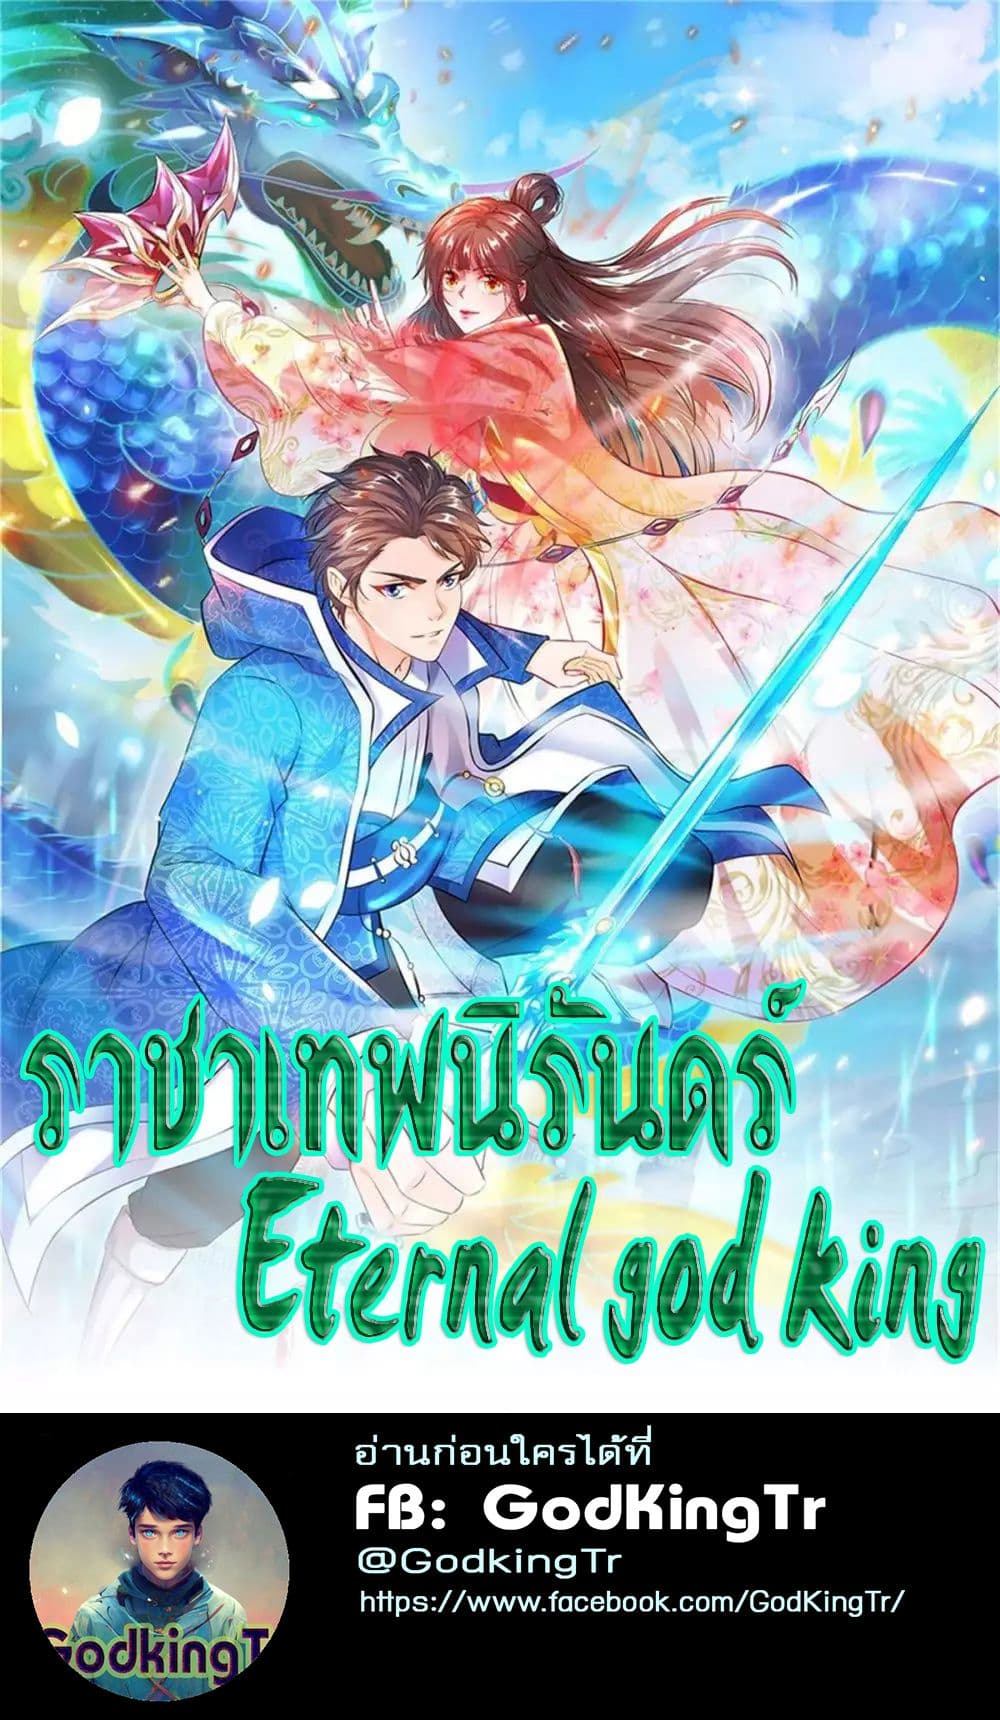 Eternal god King 22-22